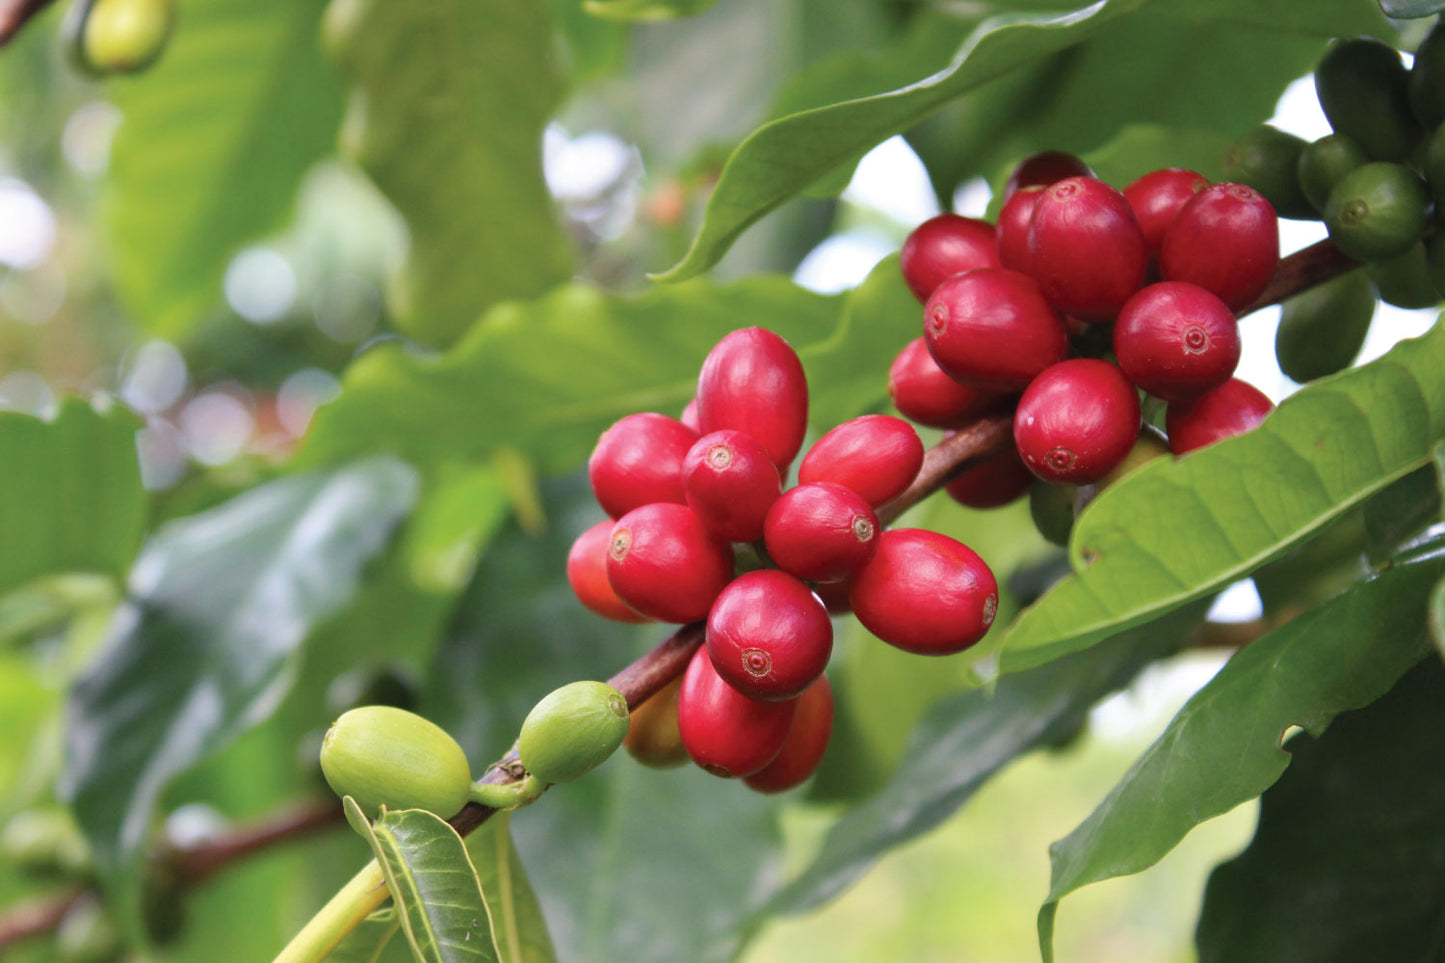 Kona Coffee Harvest 2021